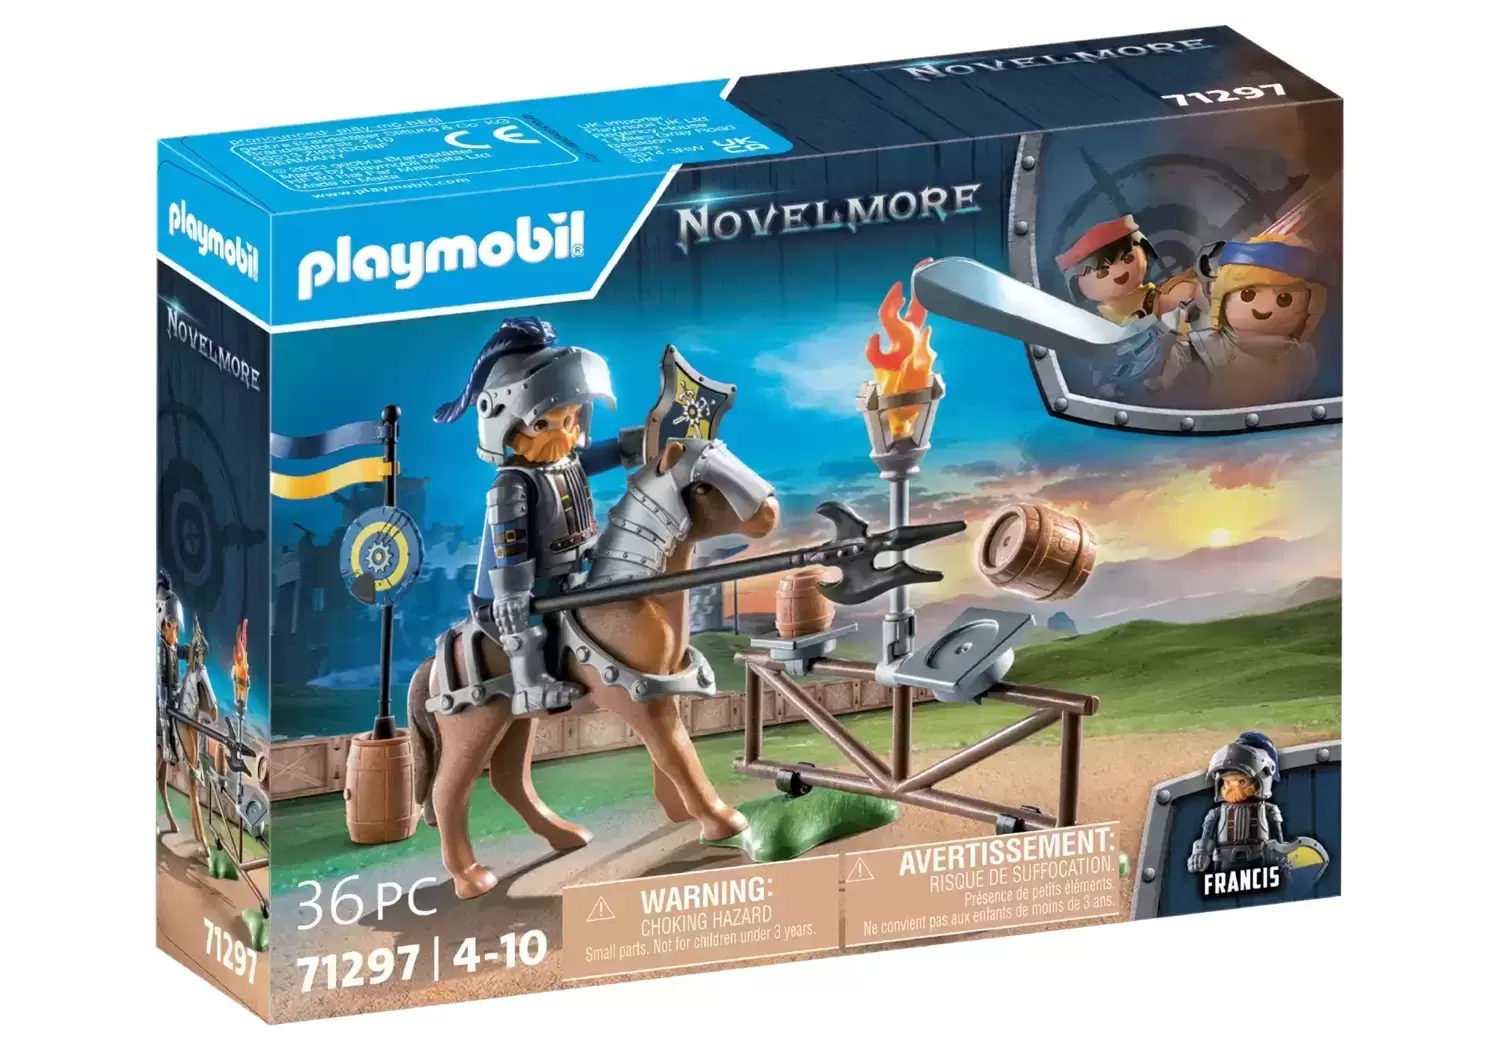 Playmobil Novelmore treasure transport